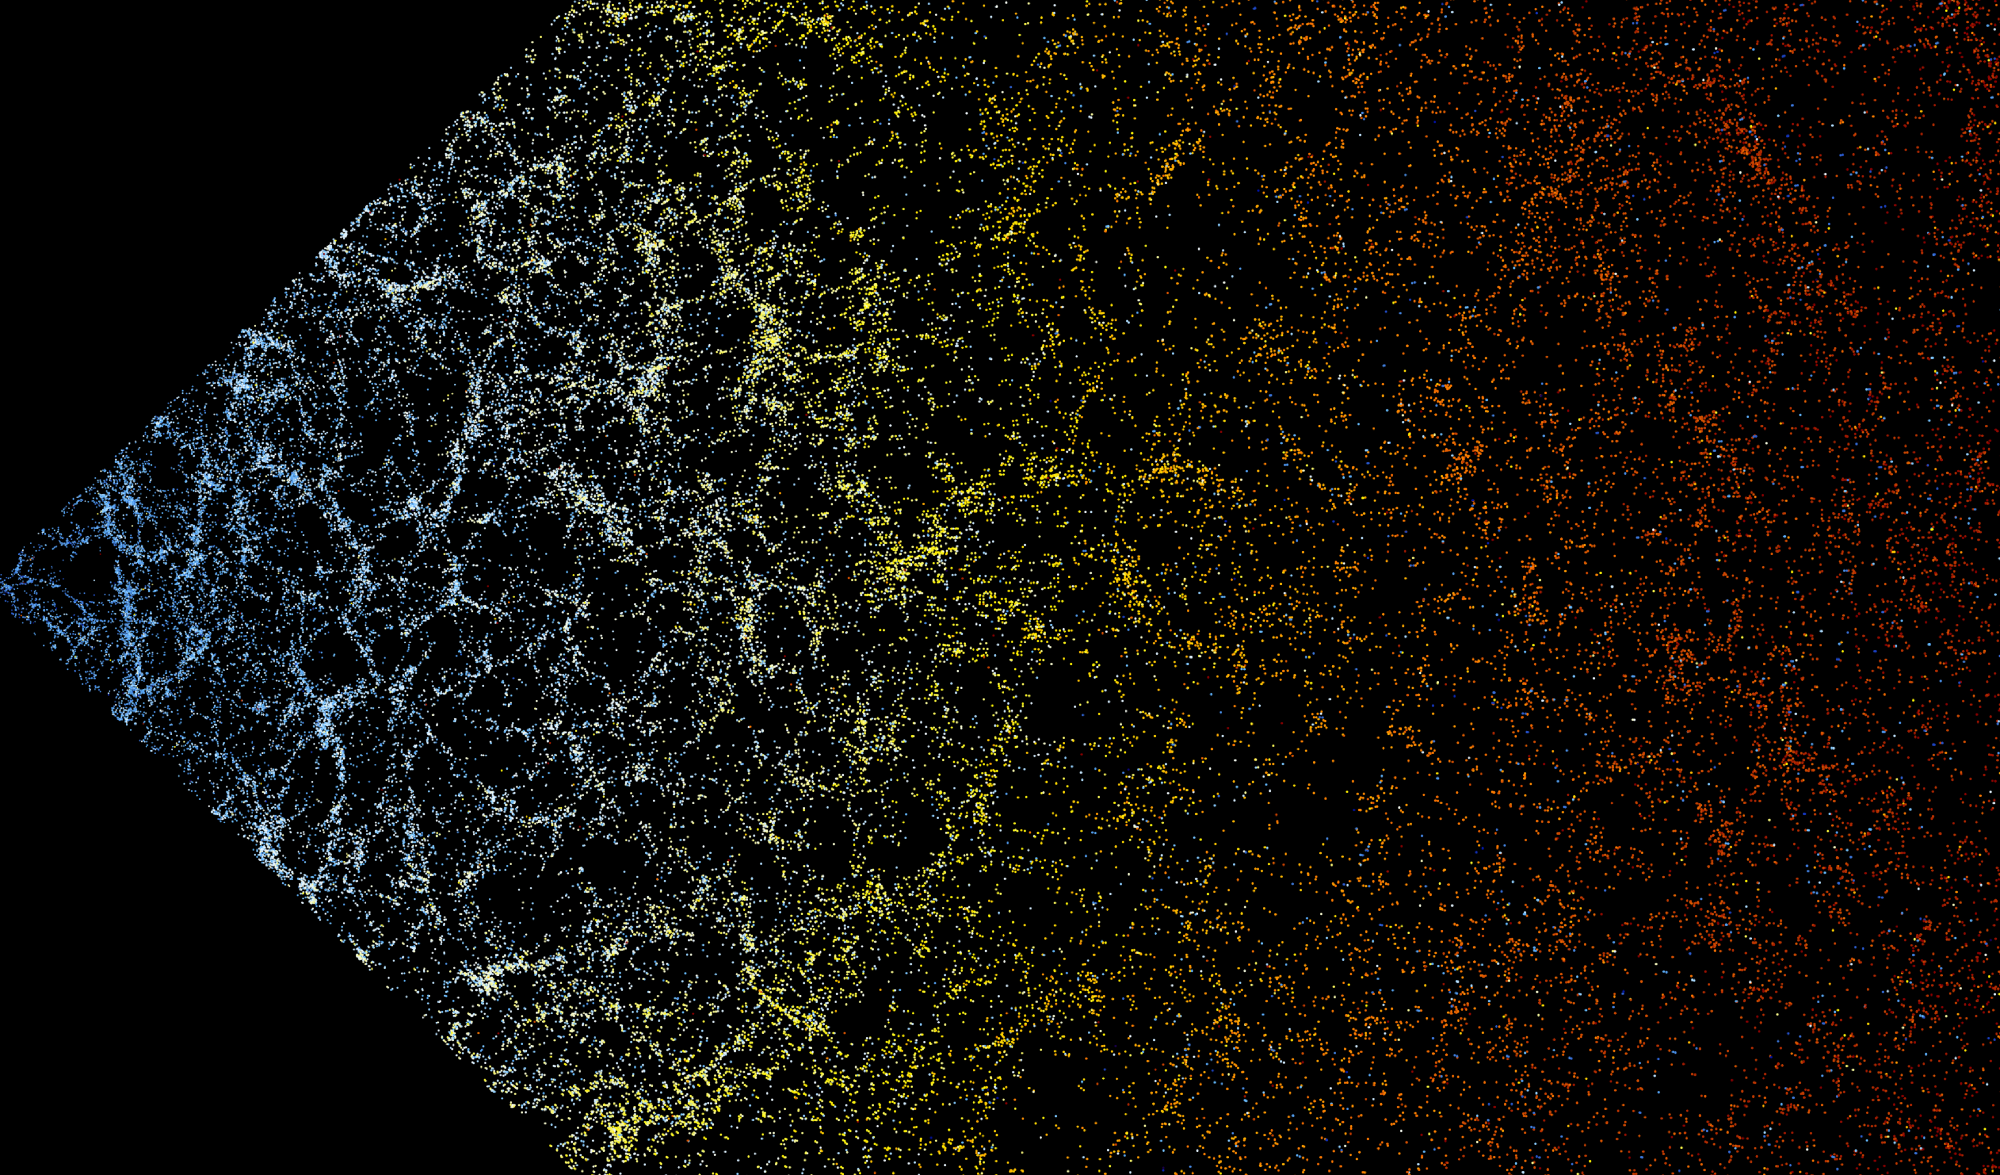 Elkészült az univerzum legnagyobb interaktív térképe, 200 ezer galaxist lehet bejárni rajta